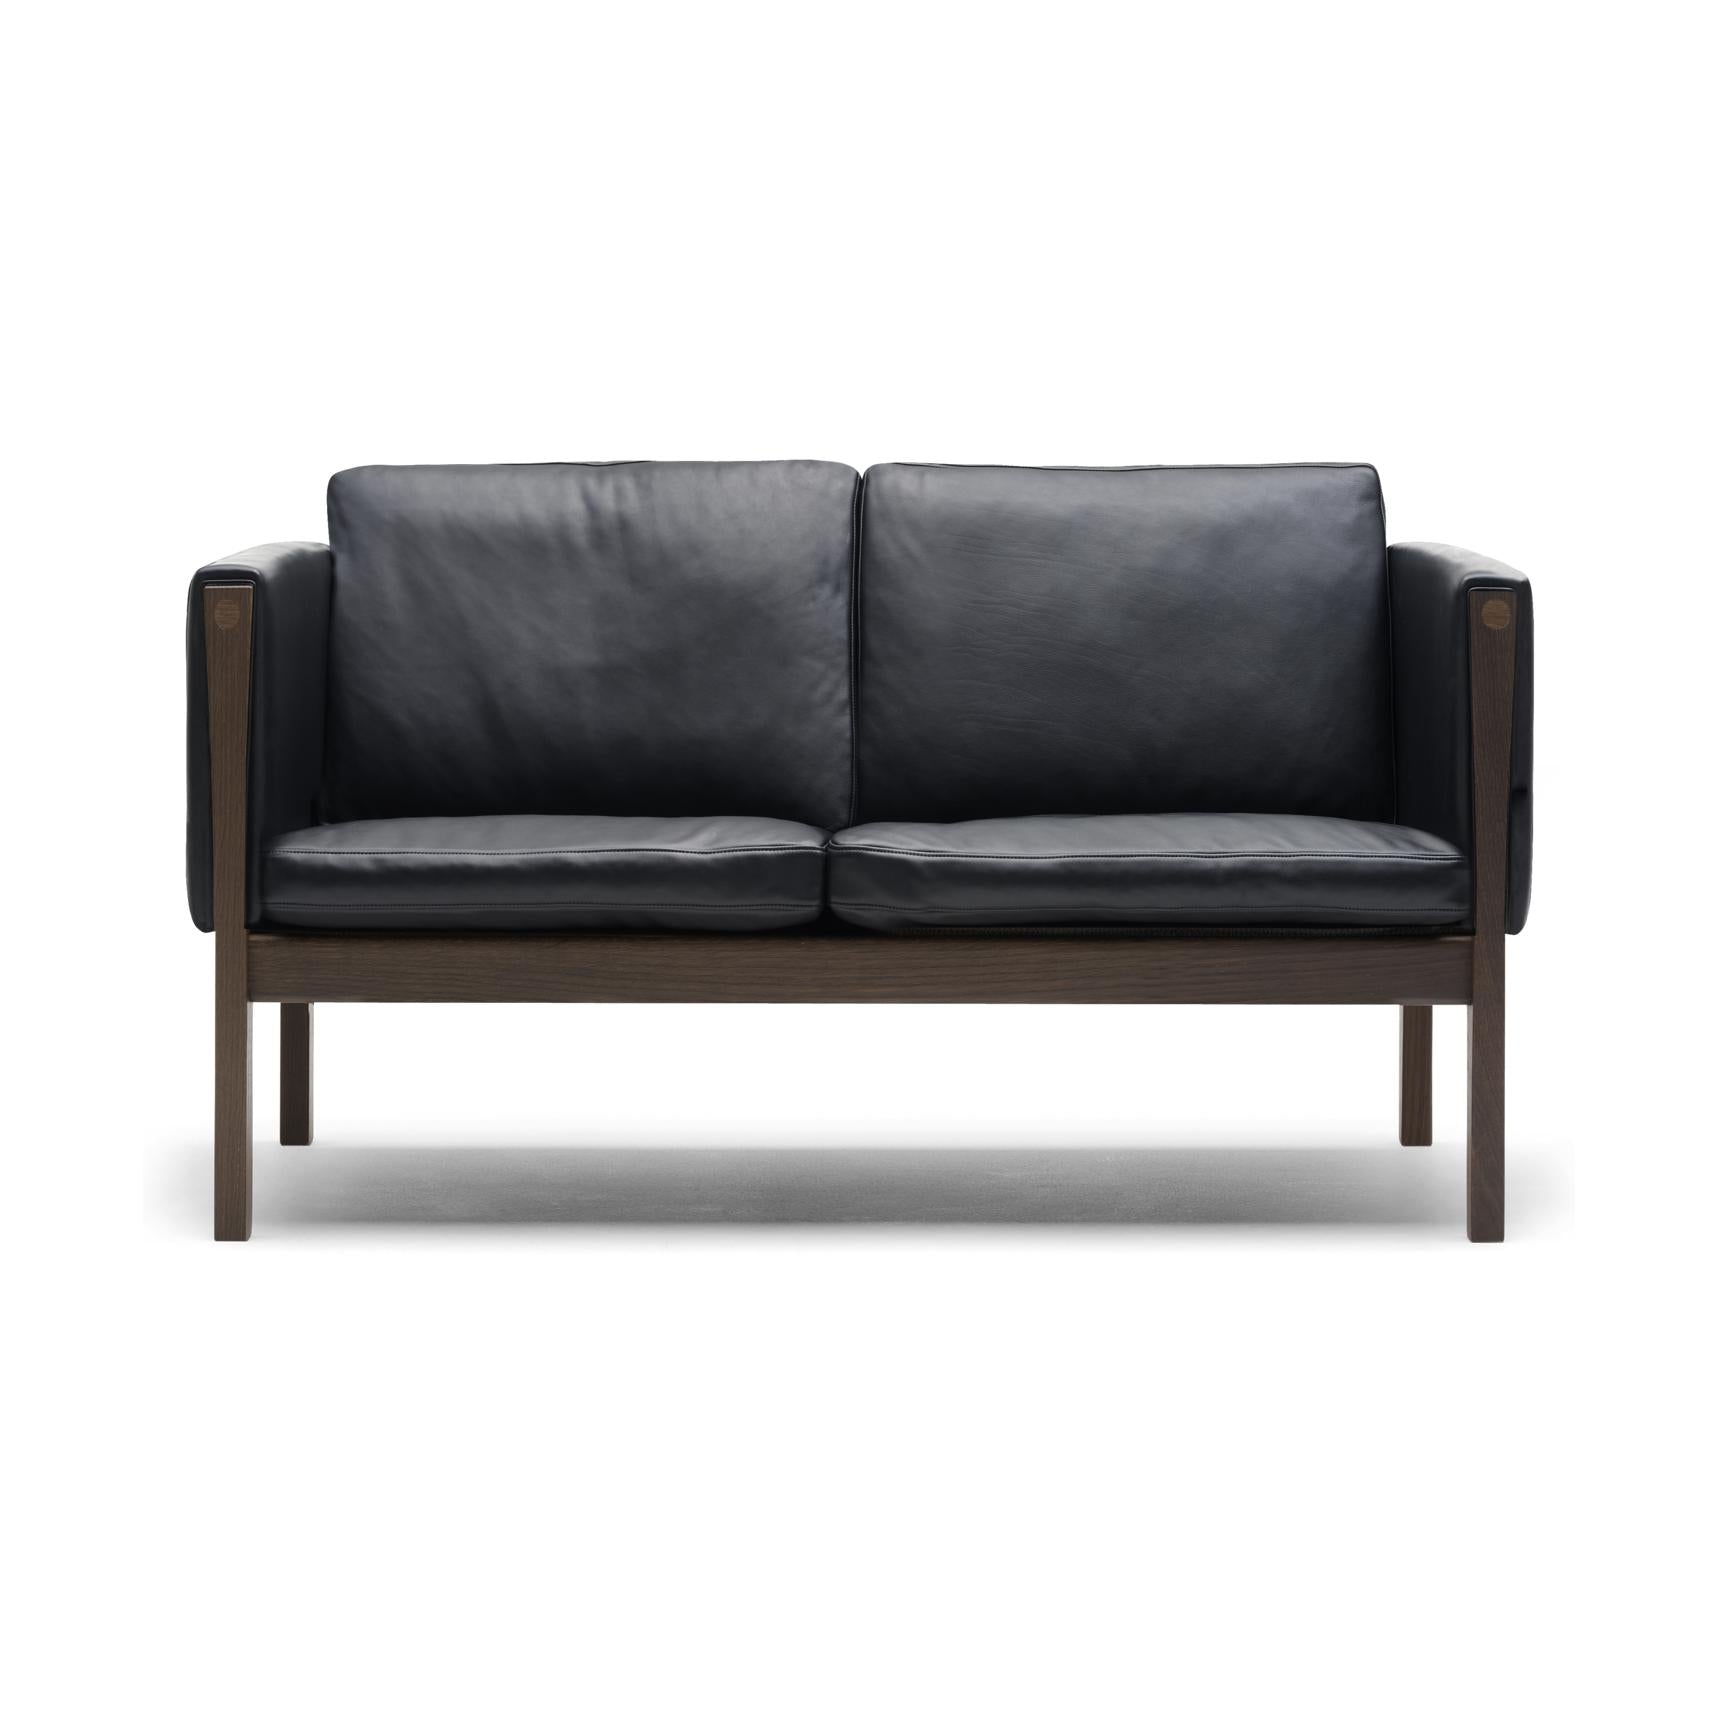 Carl Hansen CH162 divano, noce oliata/pelle nera